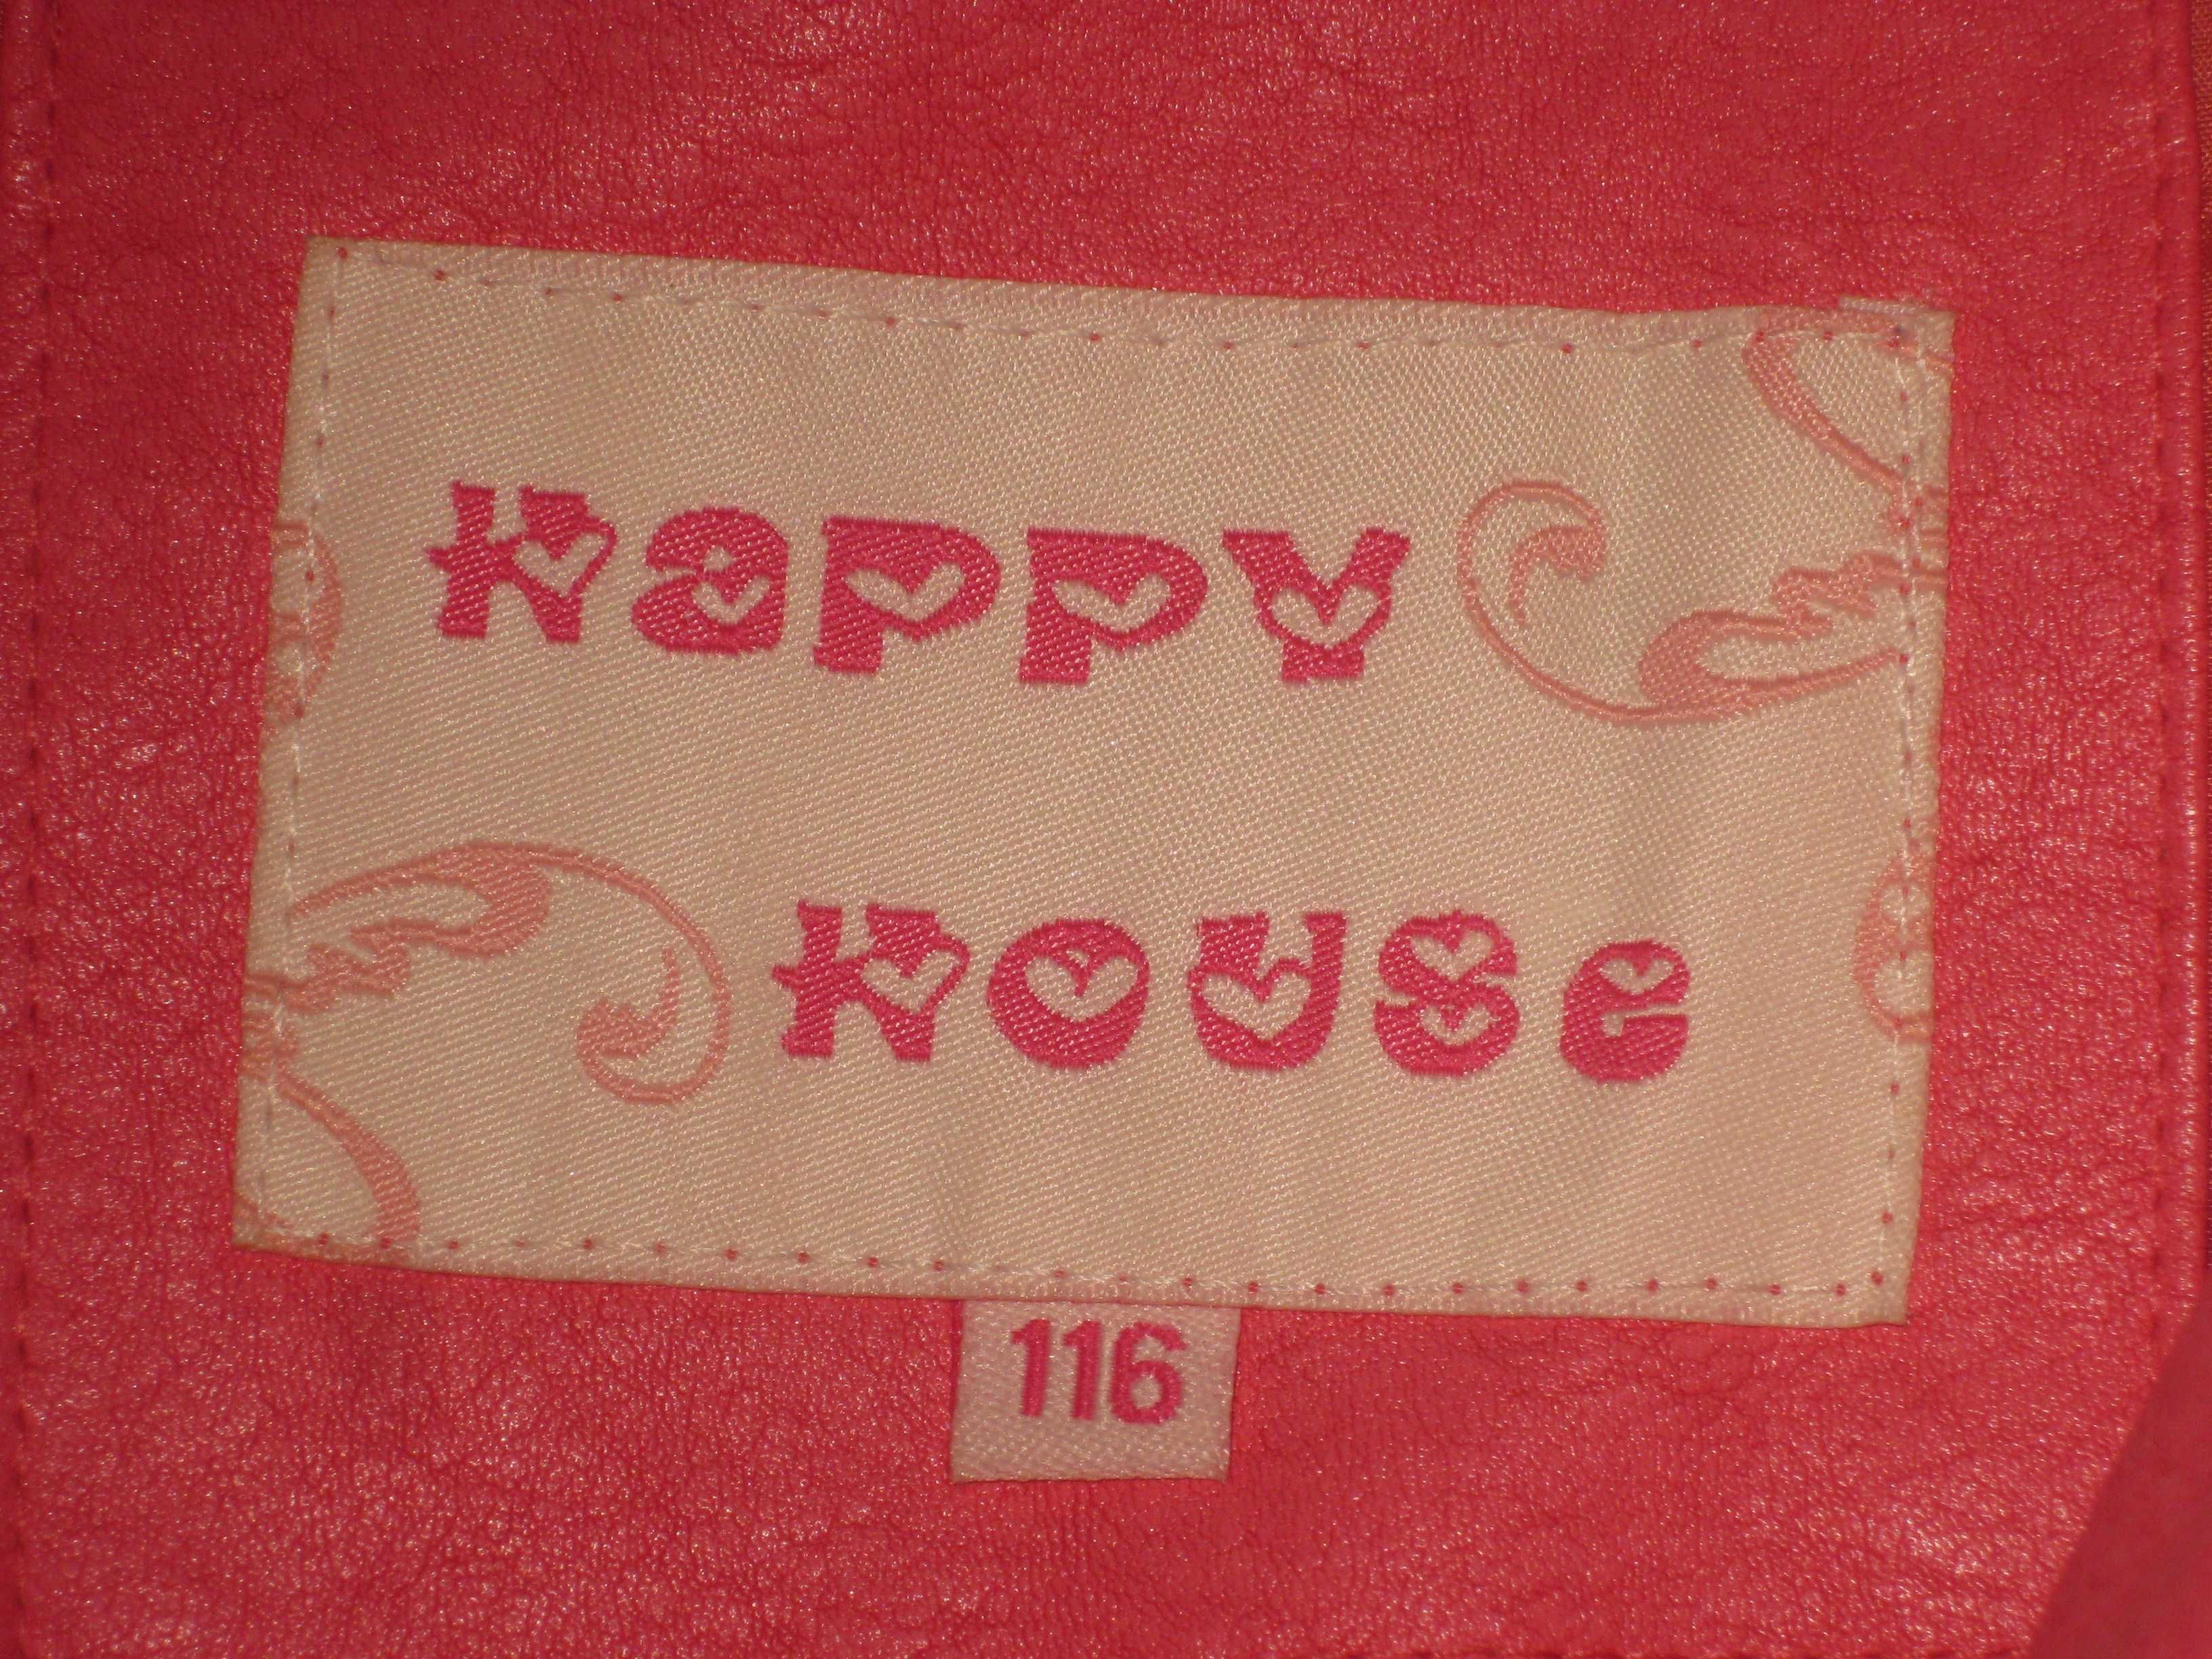 Kurtka dla dziewczynki różowa HAPPY HOUSE roz. 116